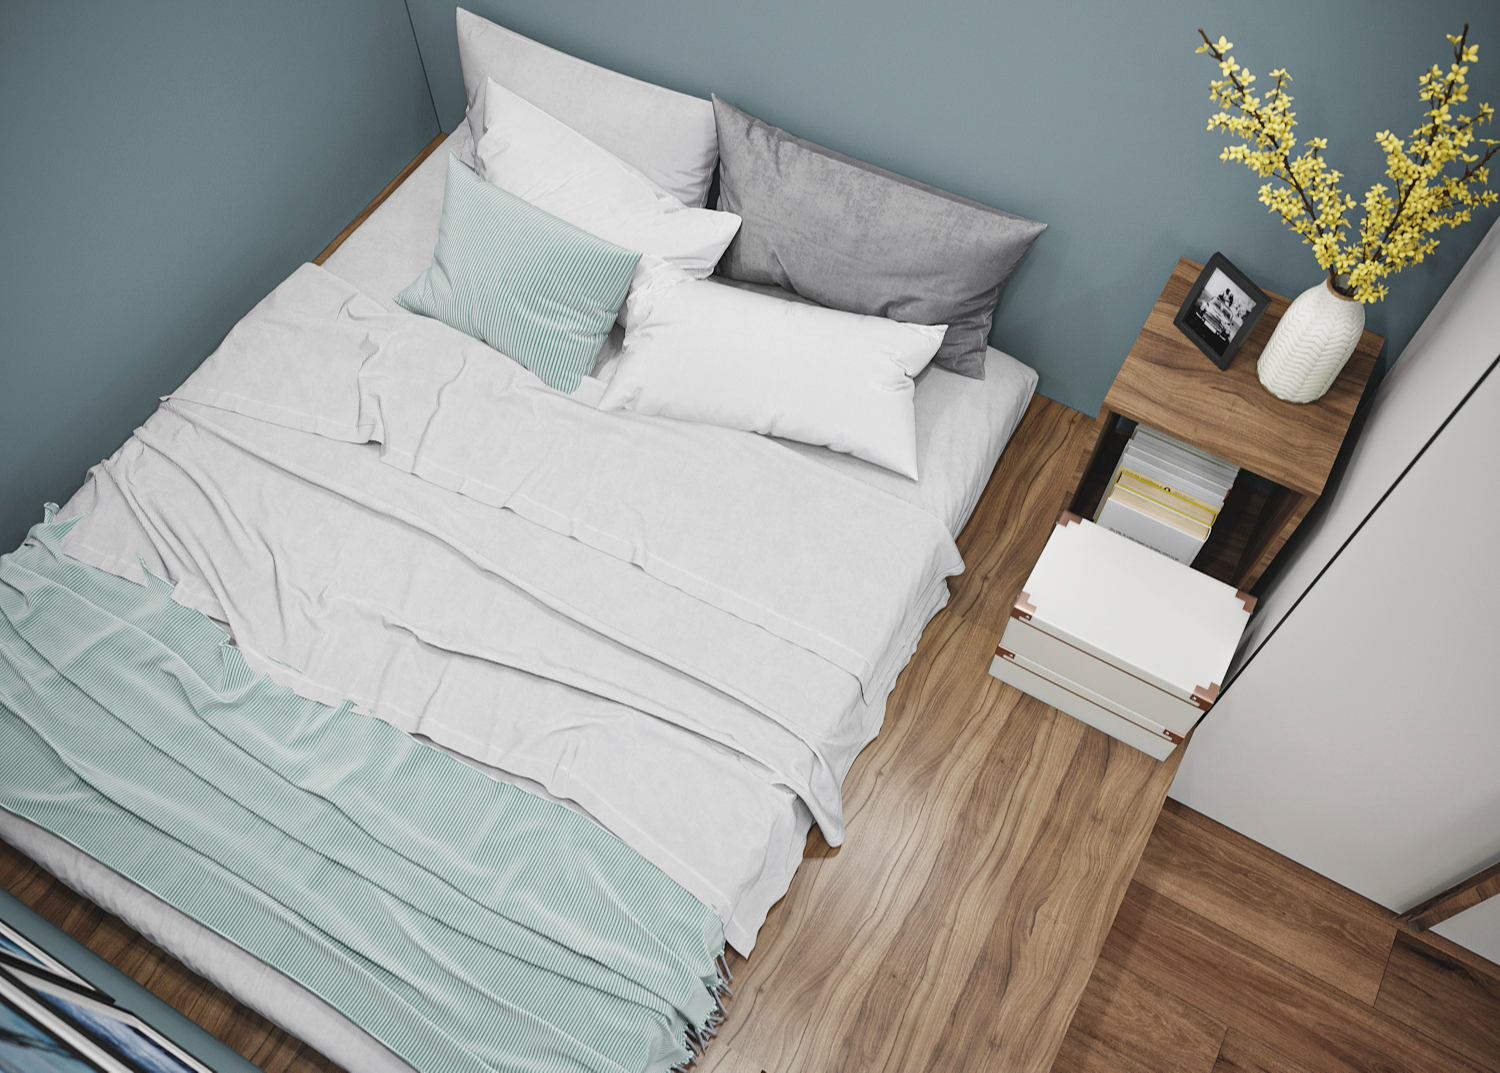 Главный плюс кровати-подиума &ndash; возможность создать дополнительные места хранения и расположение комфортного спального места в узкой вытянутой комнате